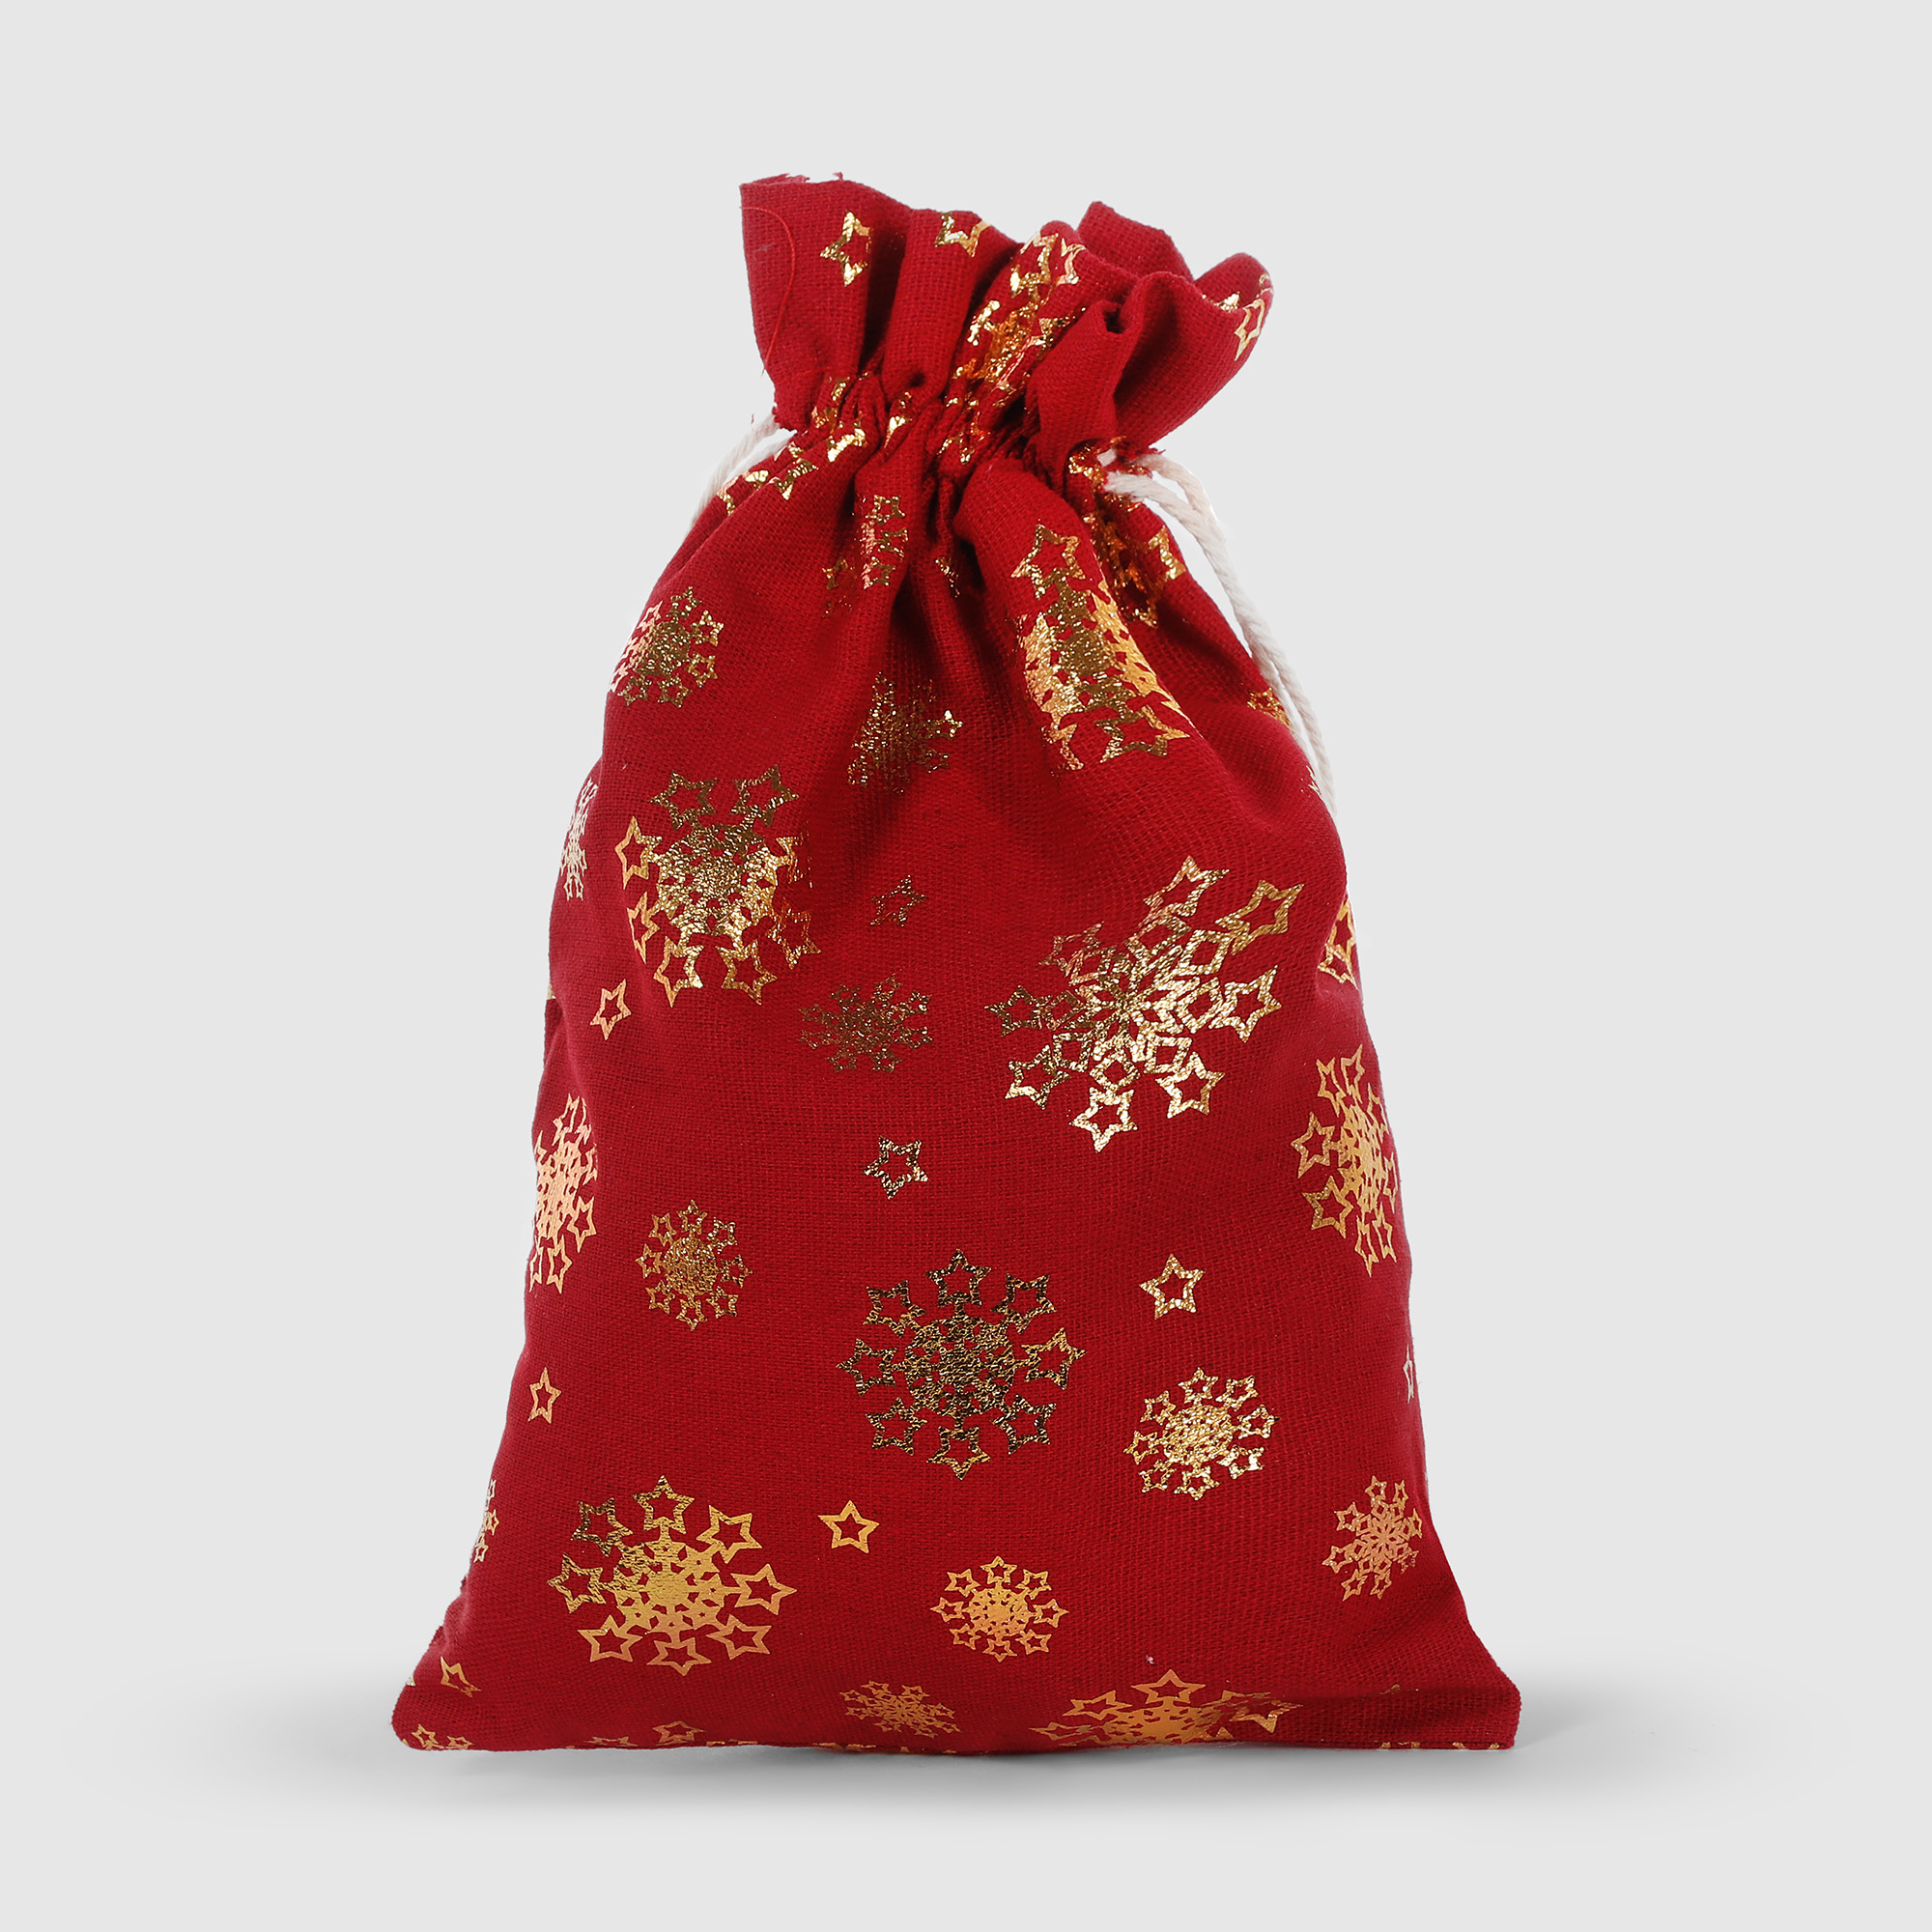 Мешок подарочный Mercury NY красный 20x30 см в ассортименте мешок для подарков bizzotto ny красный 60x100 см